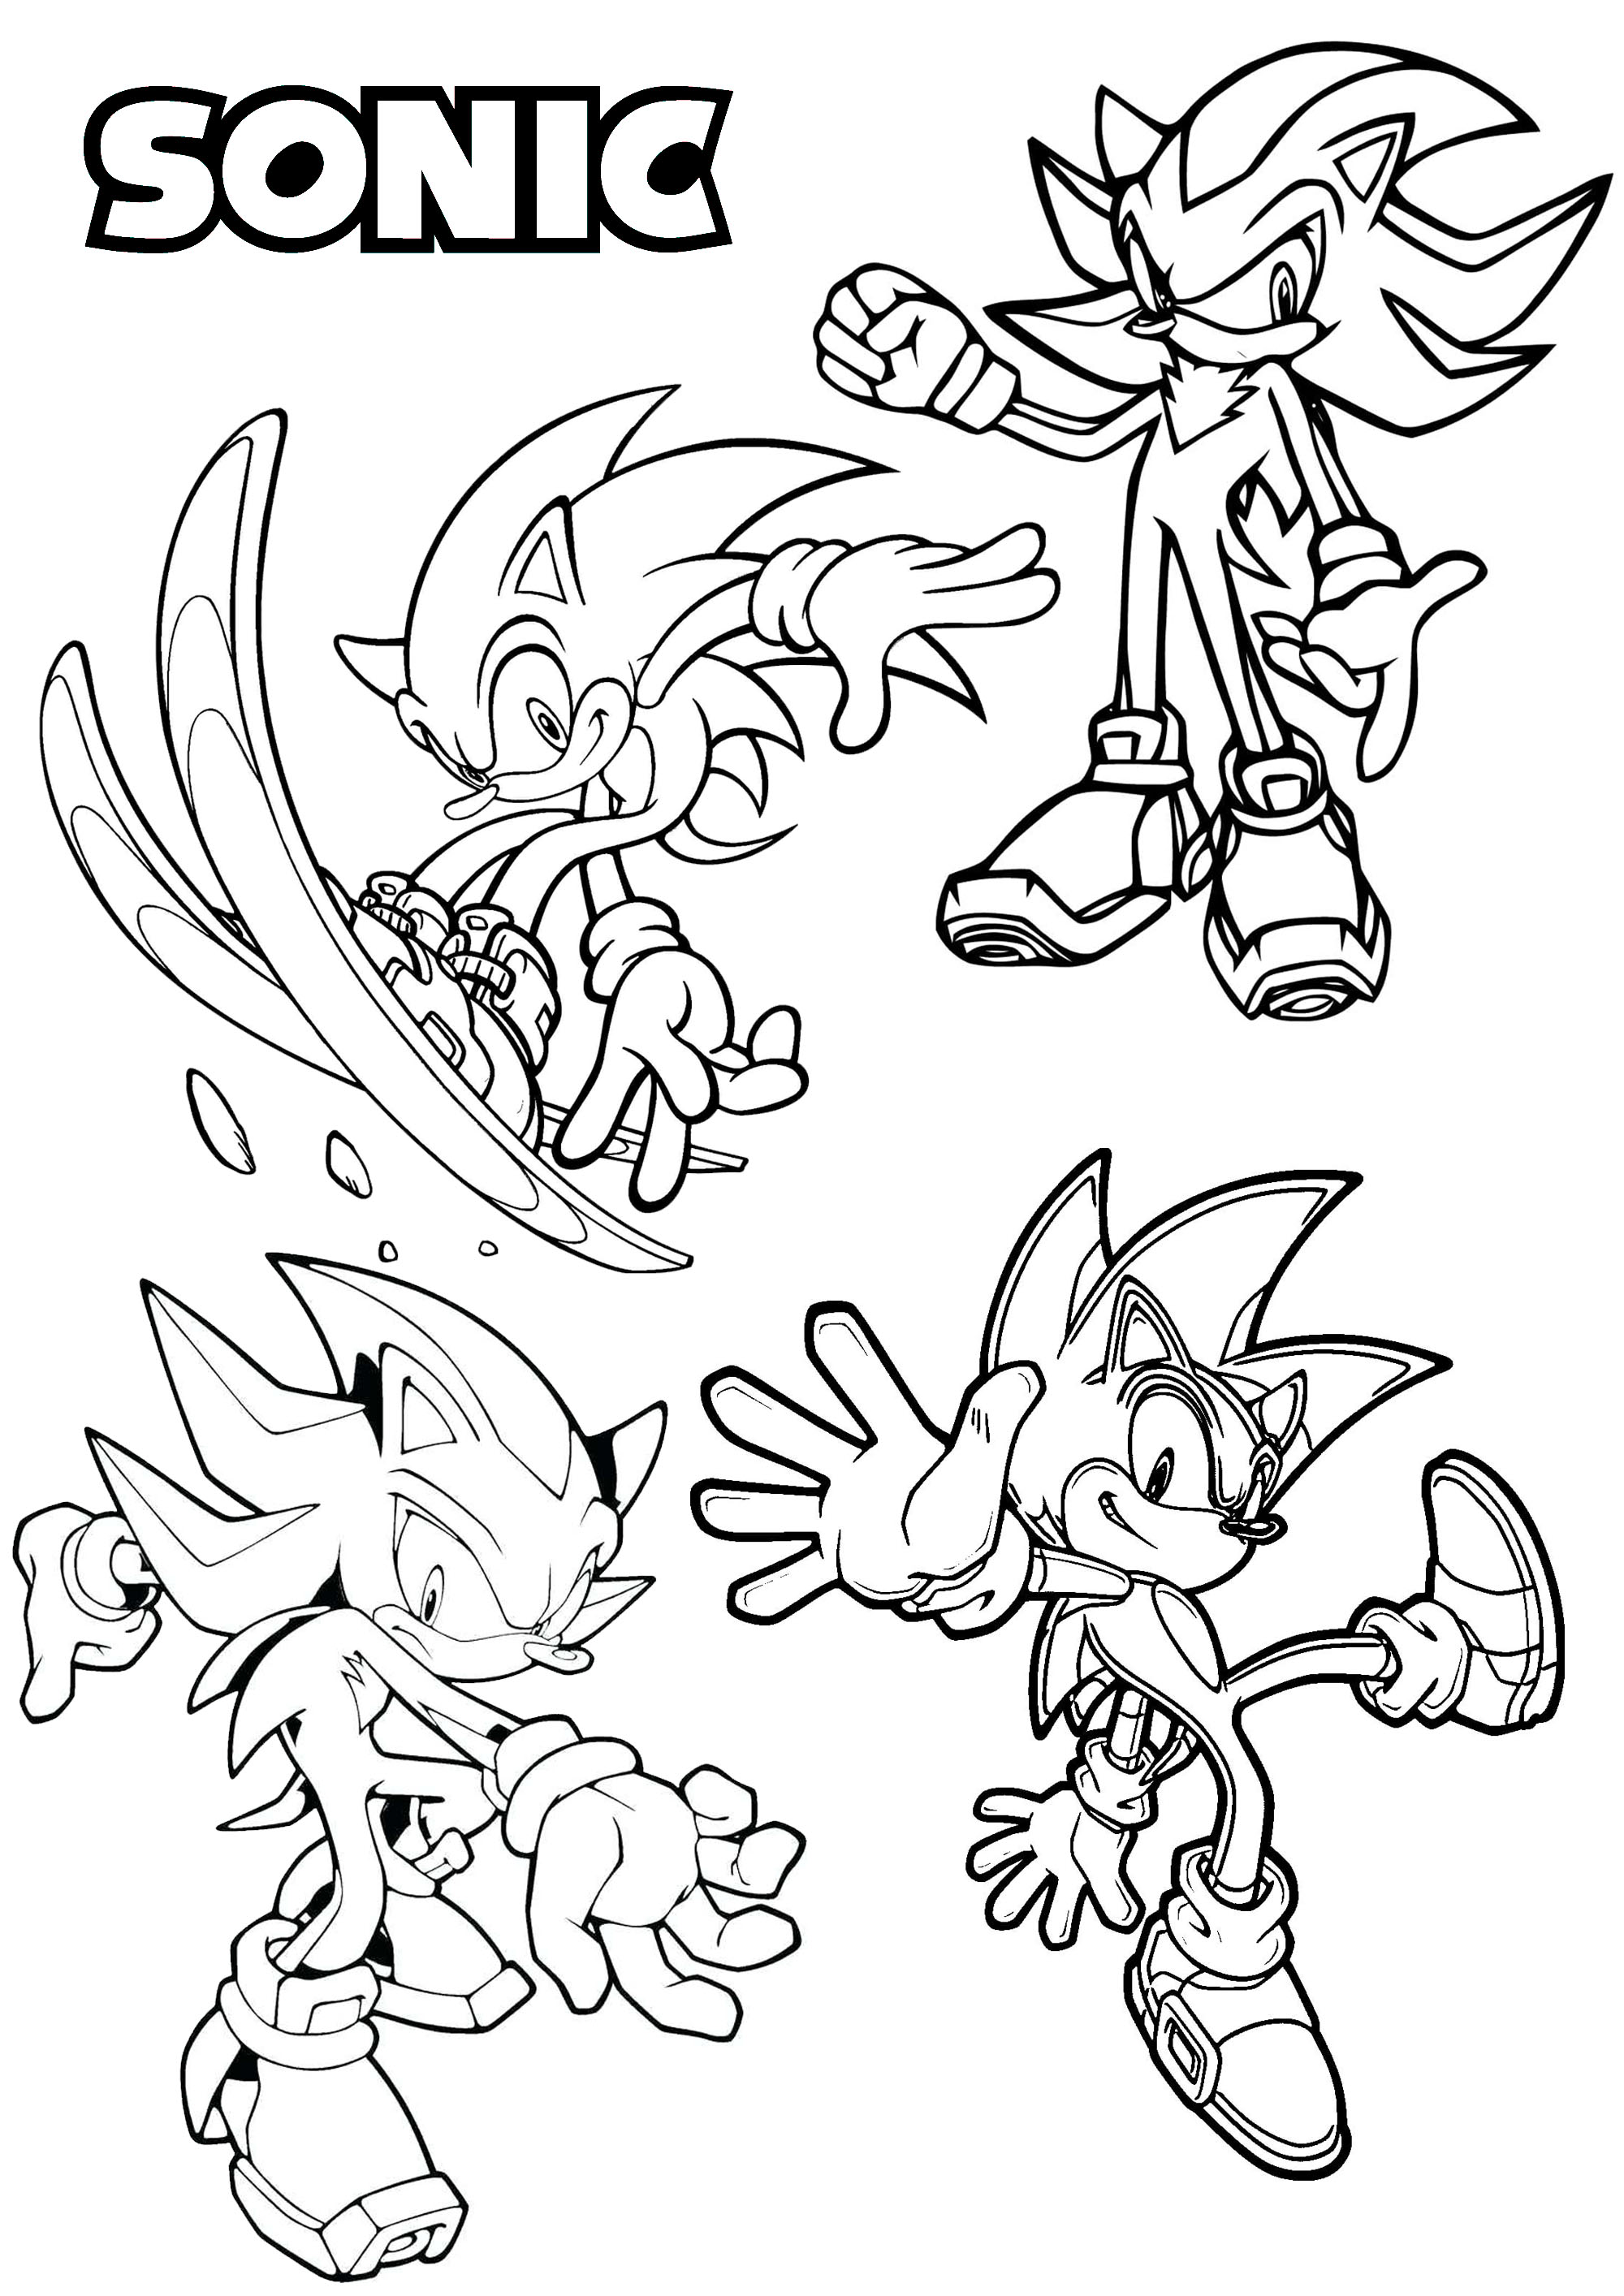 Quattro versioni diverse di uno dei più famosi personaggi dei videogiochi, creato negli anni '90: Sonic il riccio